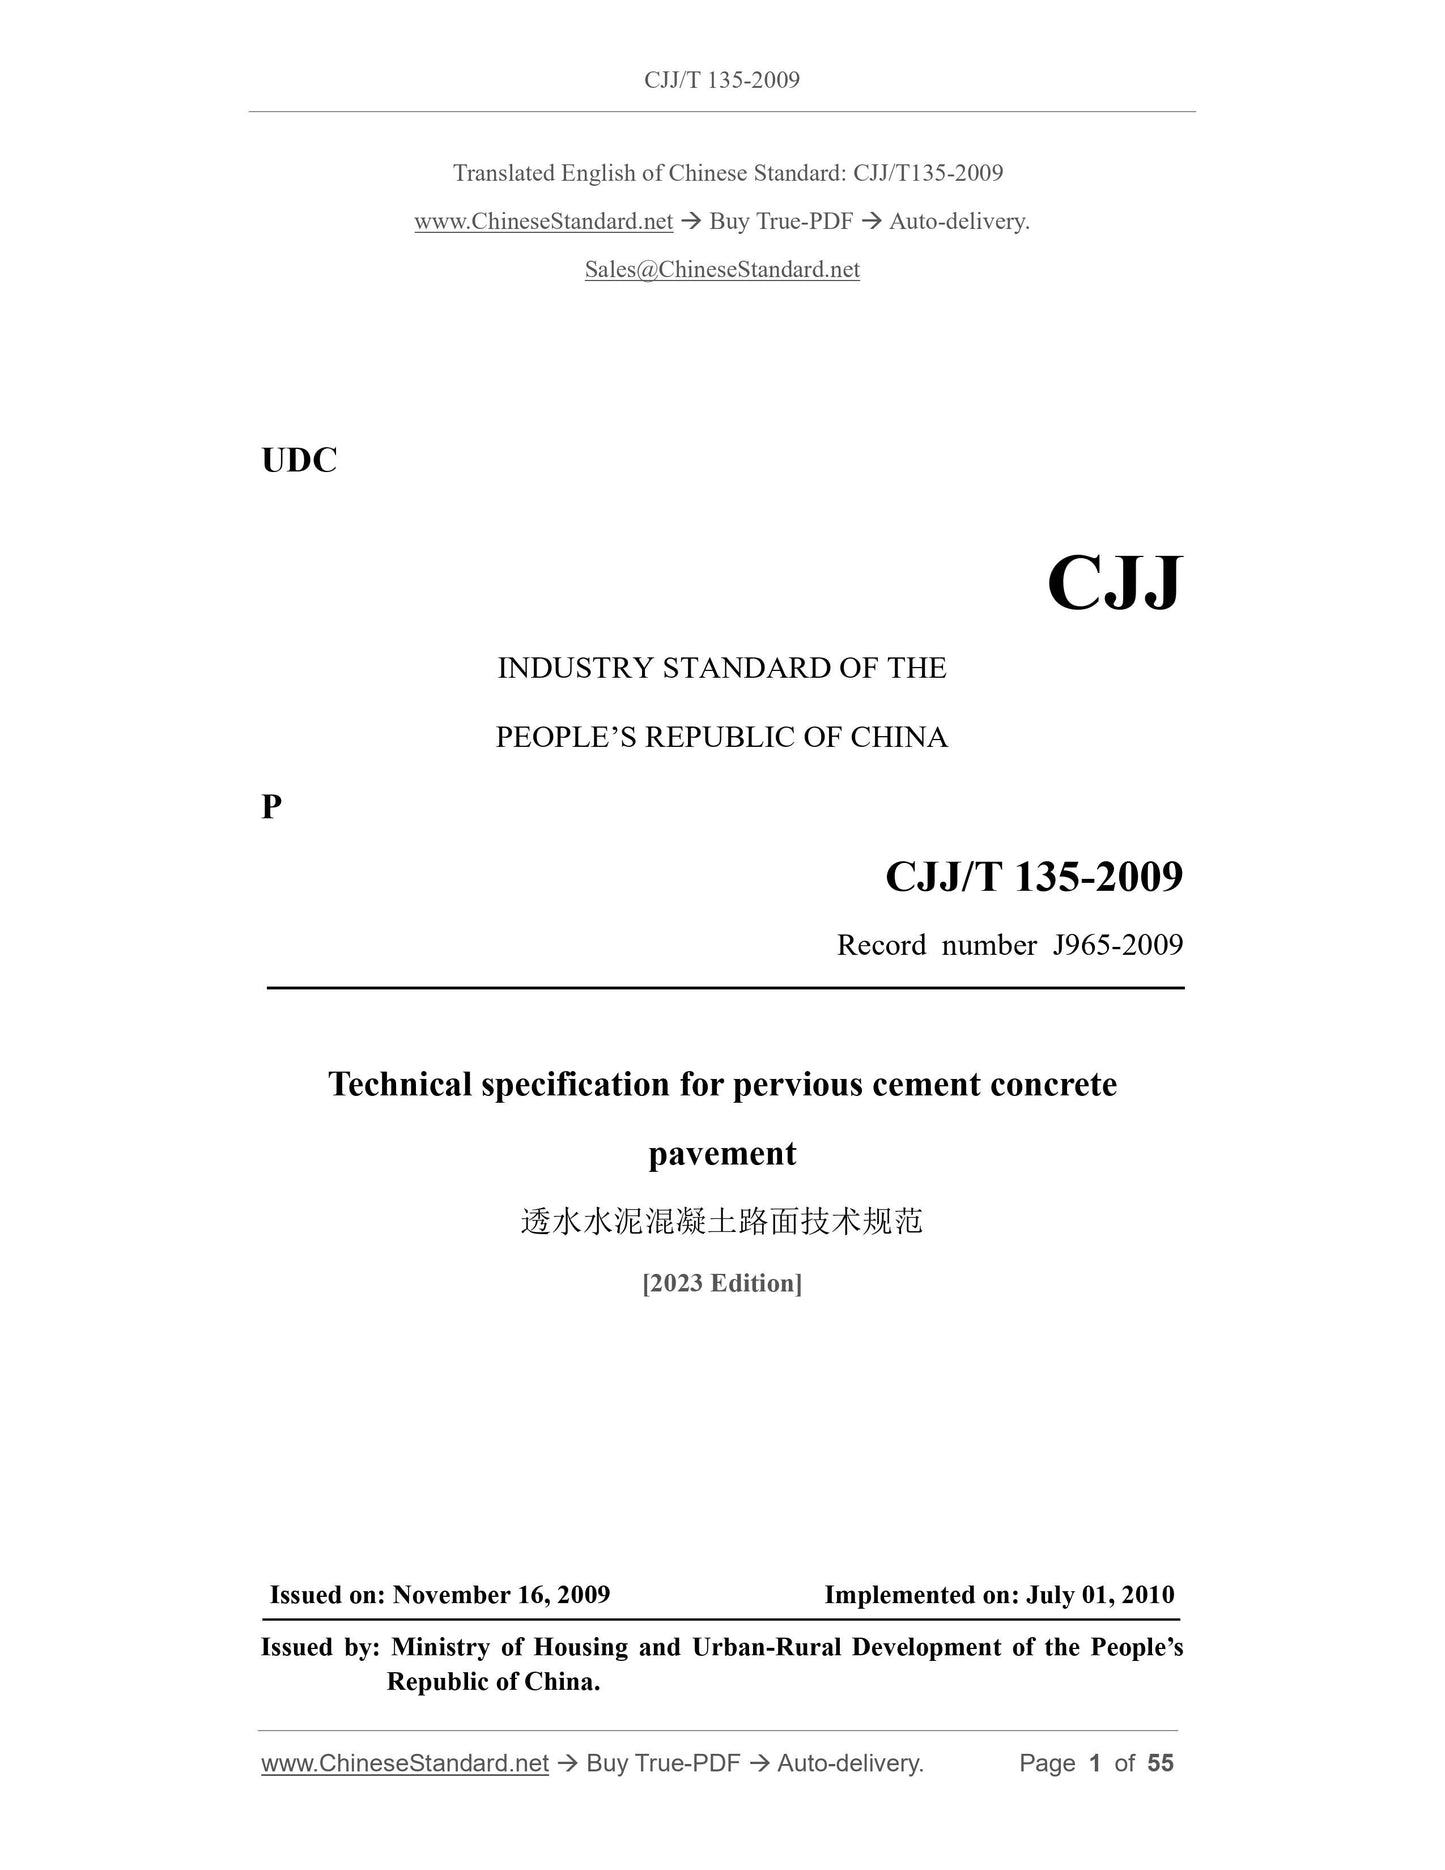 CJJ/T 135-2009 Page 1